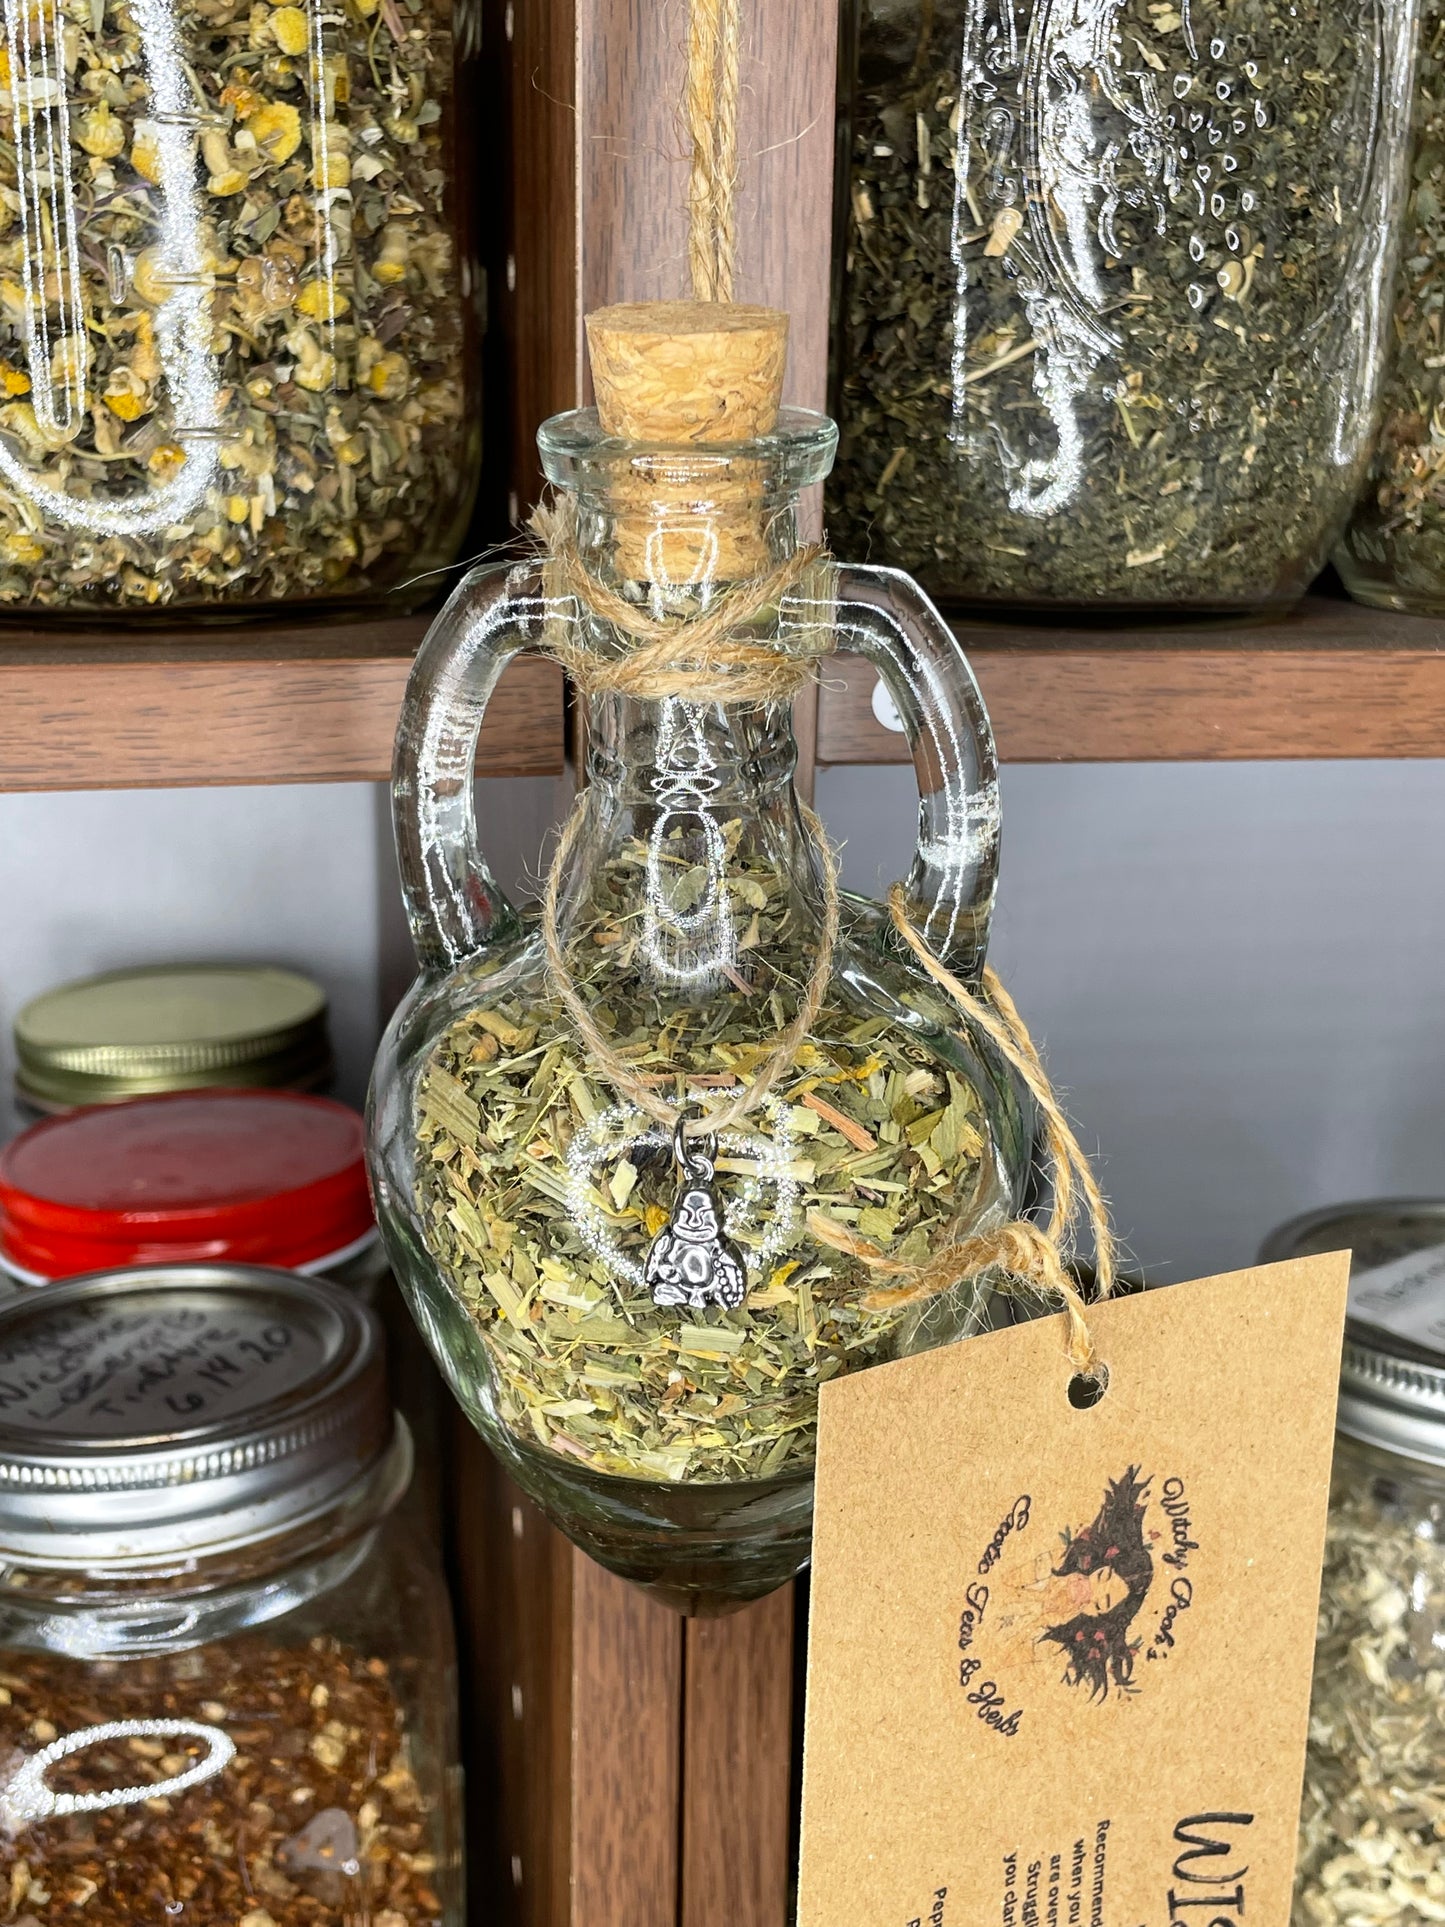 Witchy Pooh's Wisdom Herbal Loose Leaf Tea in Hanging Jars